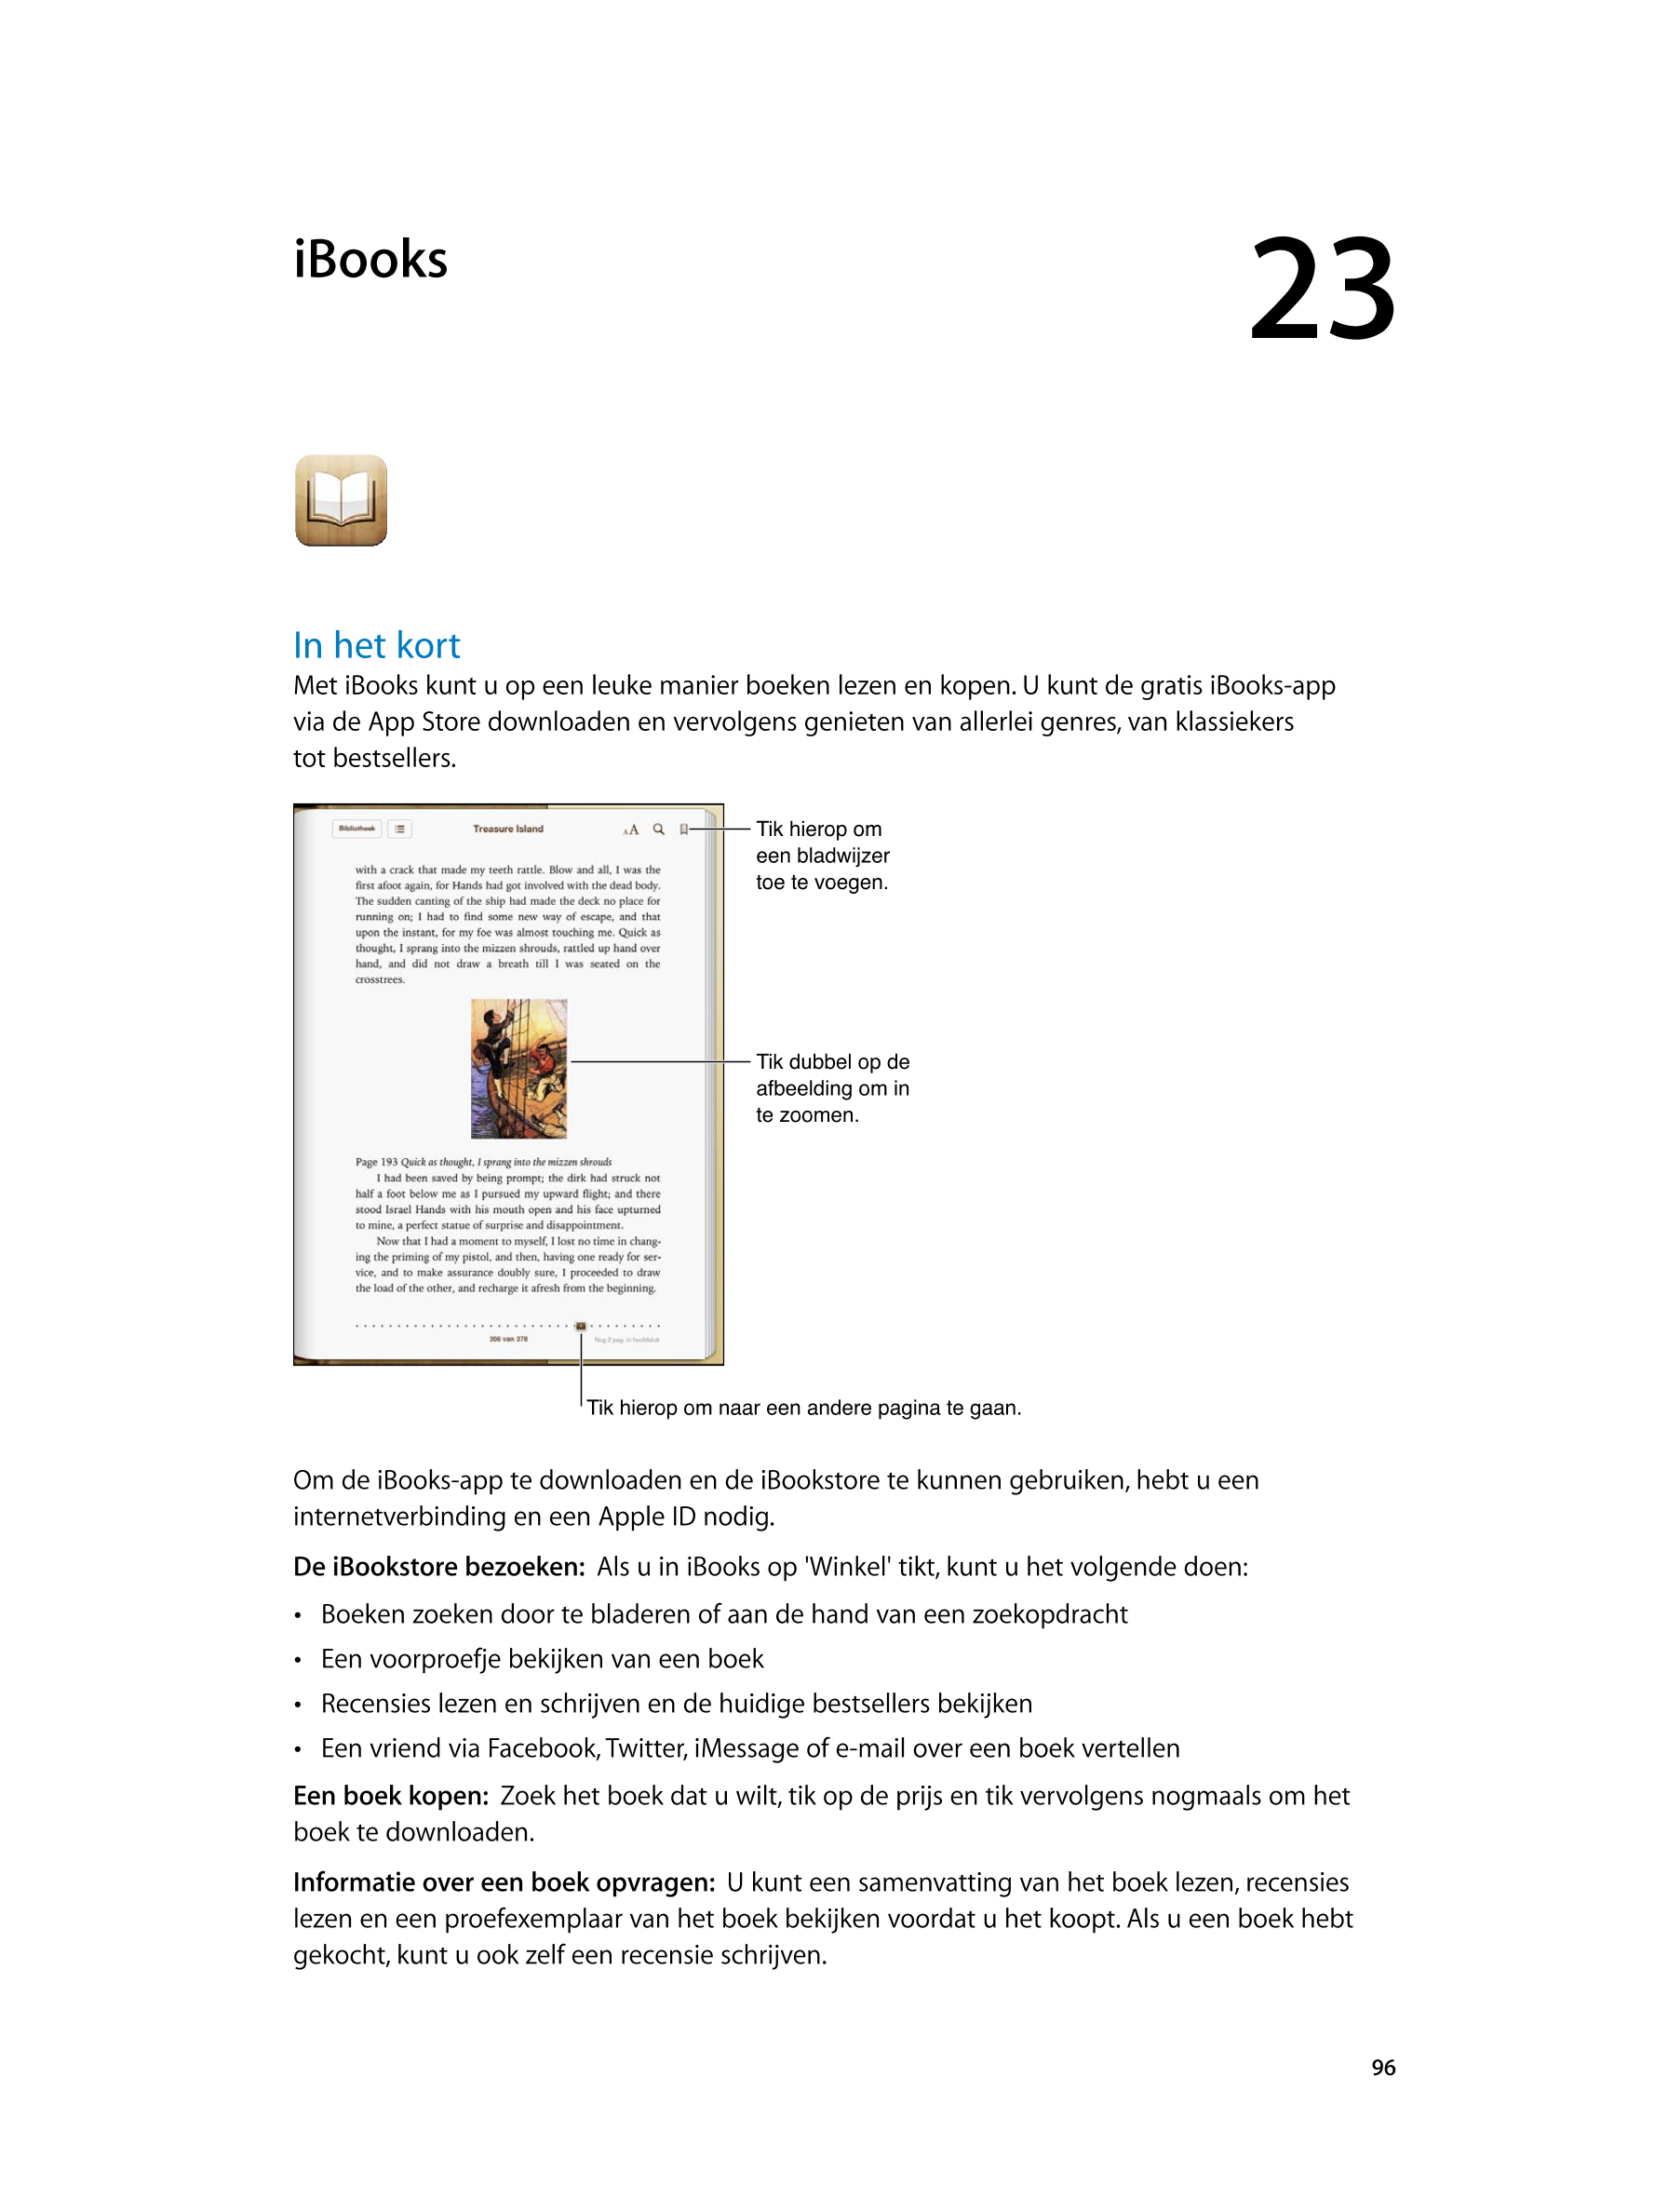   iBooks 23
In het kort
Met iBooks kunt u op een leuke manier boeken lezen en kopen. U kunt de gratis iBooks-app 
via de App Sto